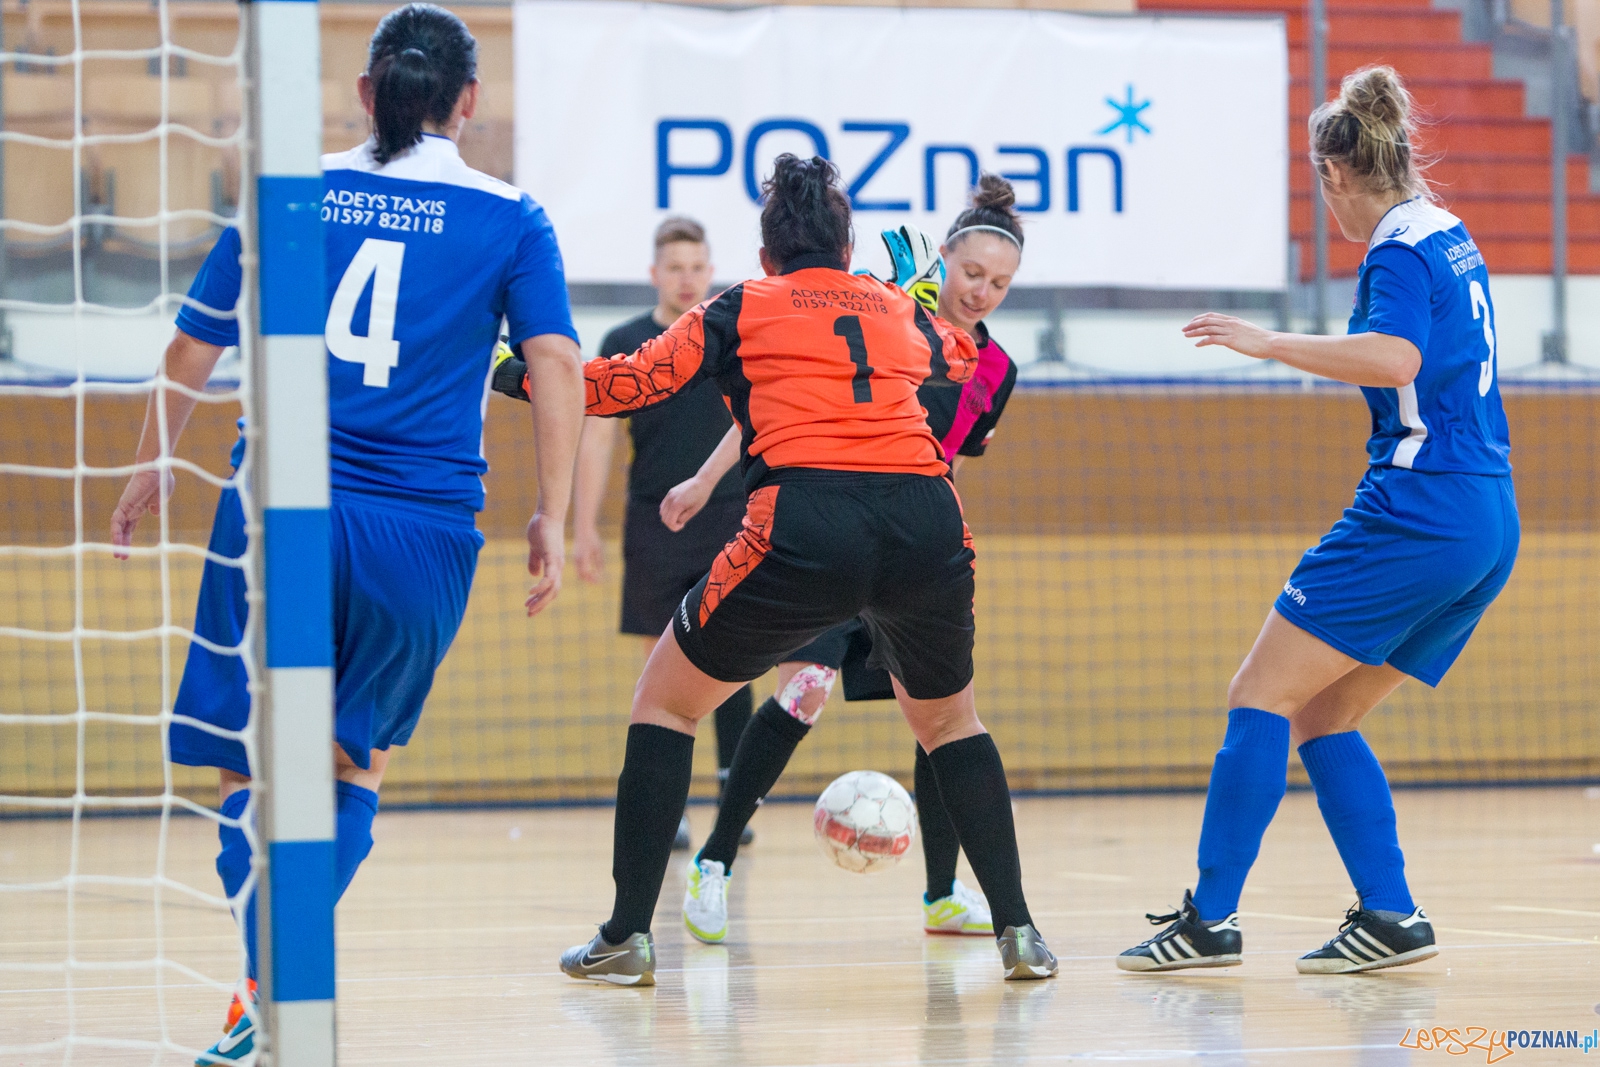 I Międzynarodowy Turniej w Futsalu Kobiet  Foto: lepszyPOZNAN.pl / Piotr Rychter